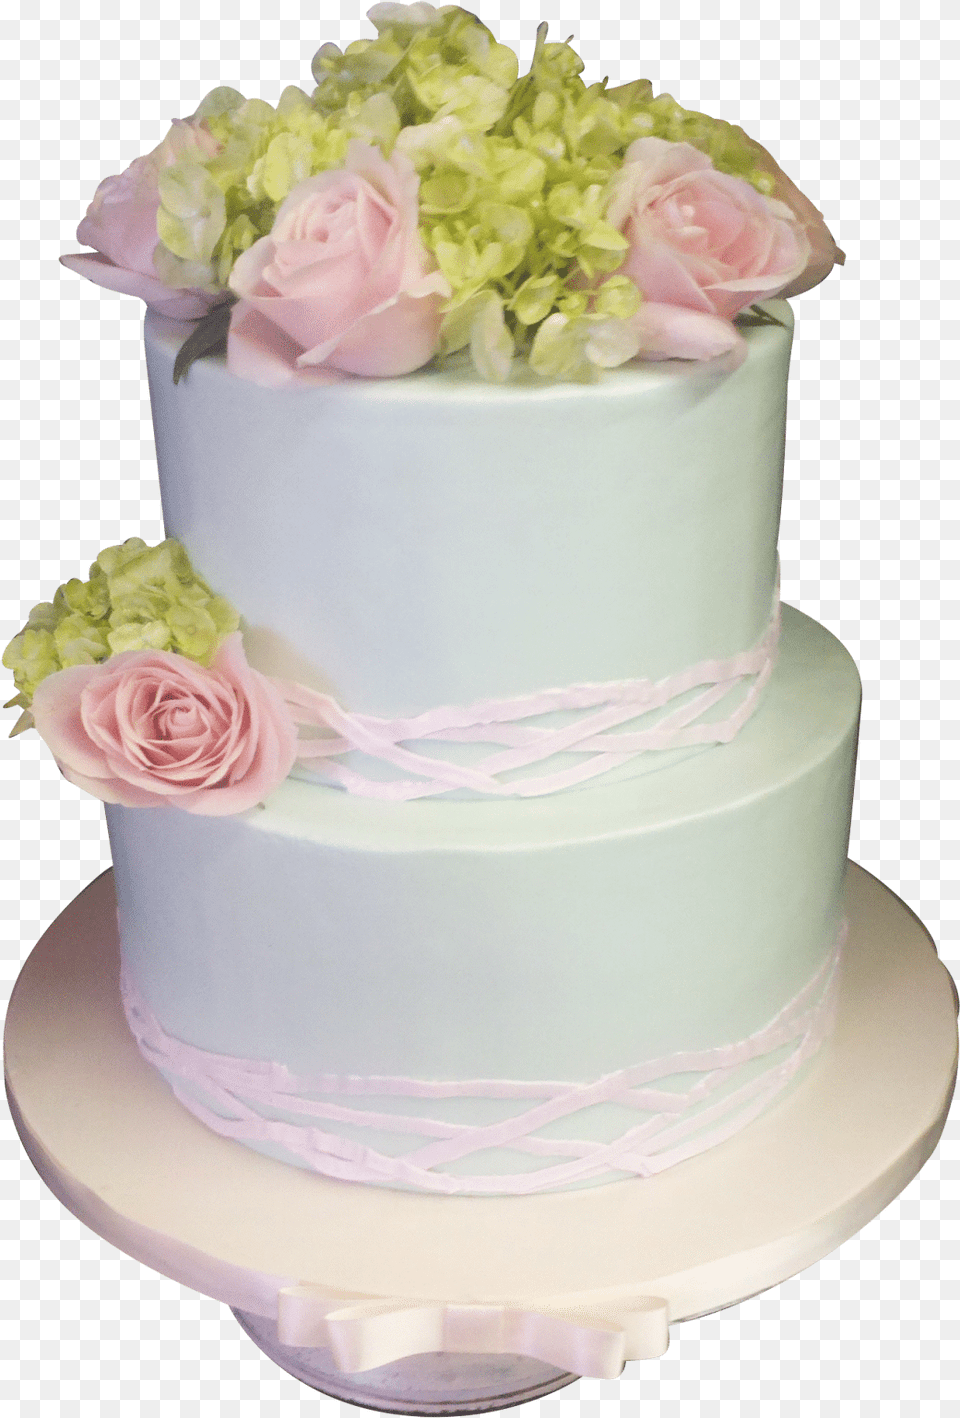 Soft Pink Wedding Cake, Food, Dessert, Flower, Rose Png Image